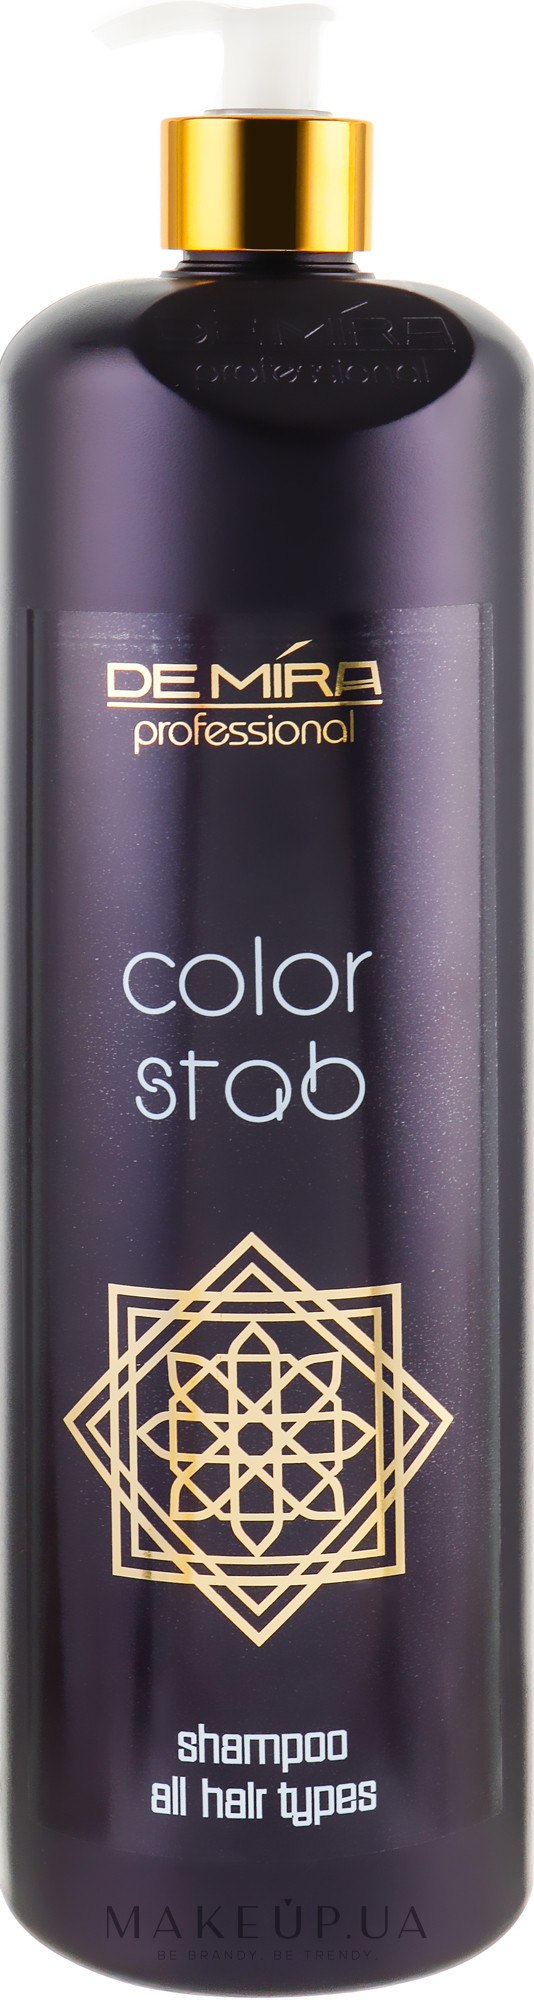 Профессиональный шампунь-стабилизатор для окрашенных волос - DeMira Professional Color Stab Shampoo — фото 1000ml